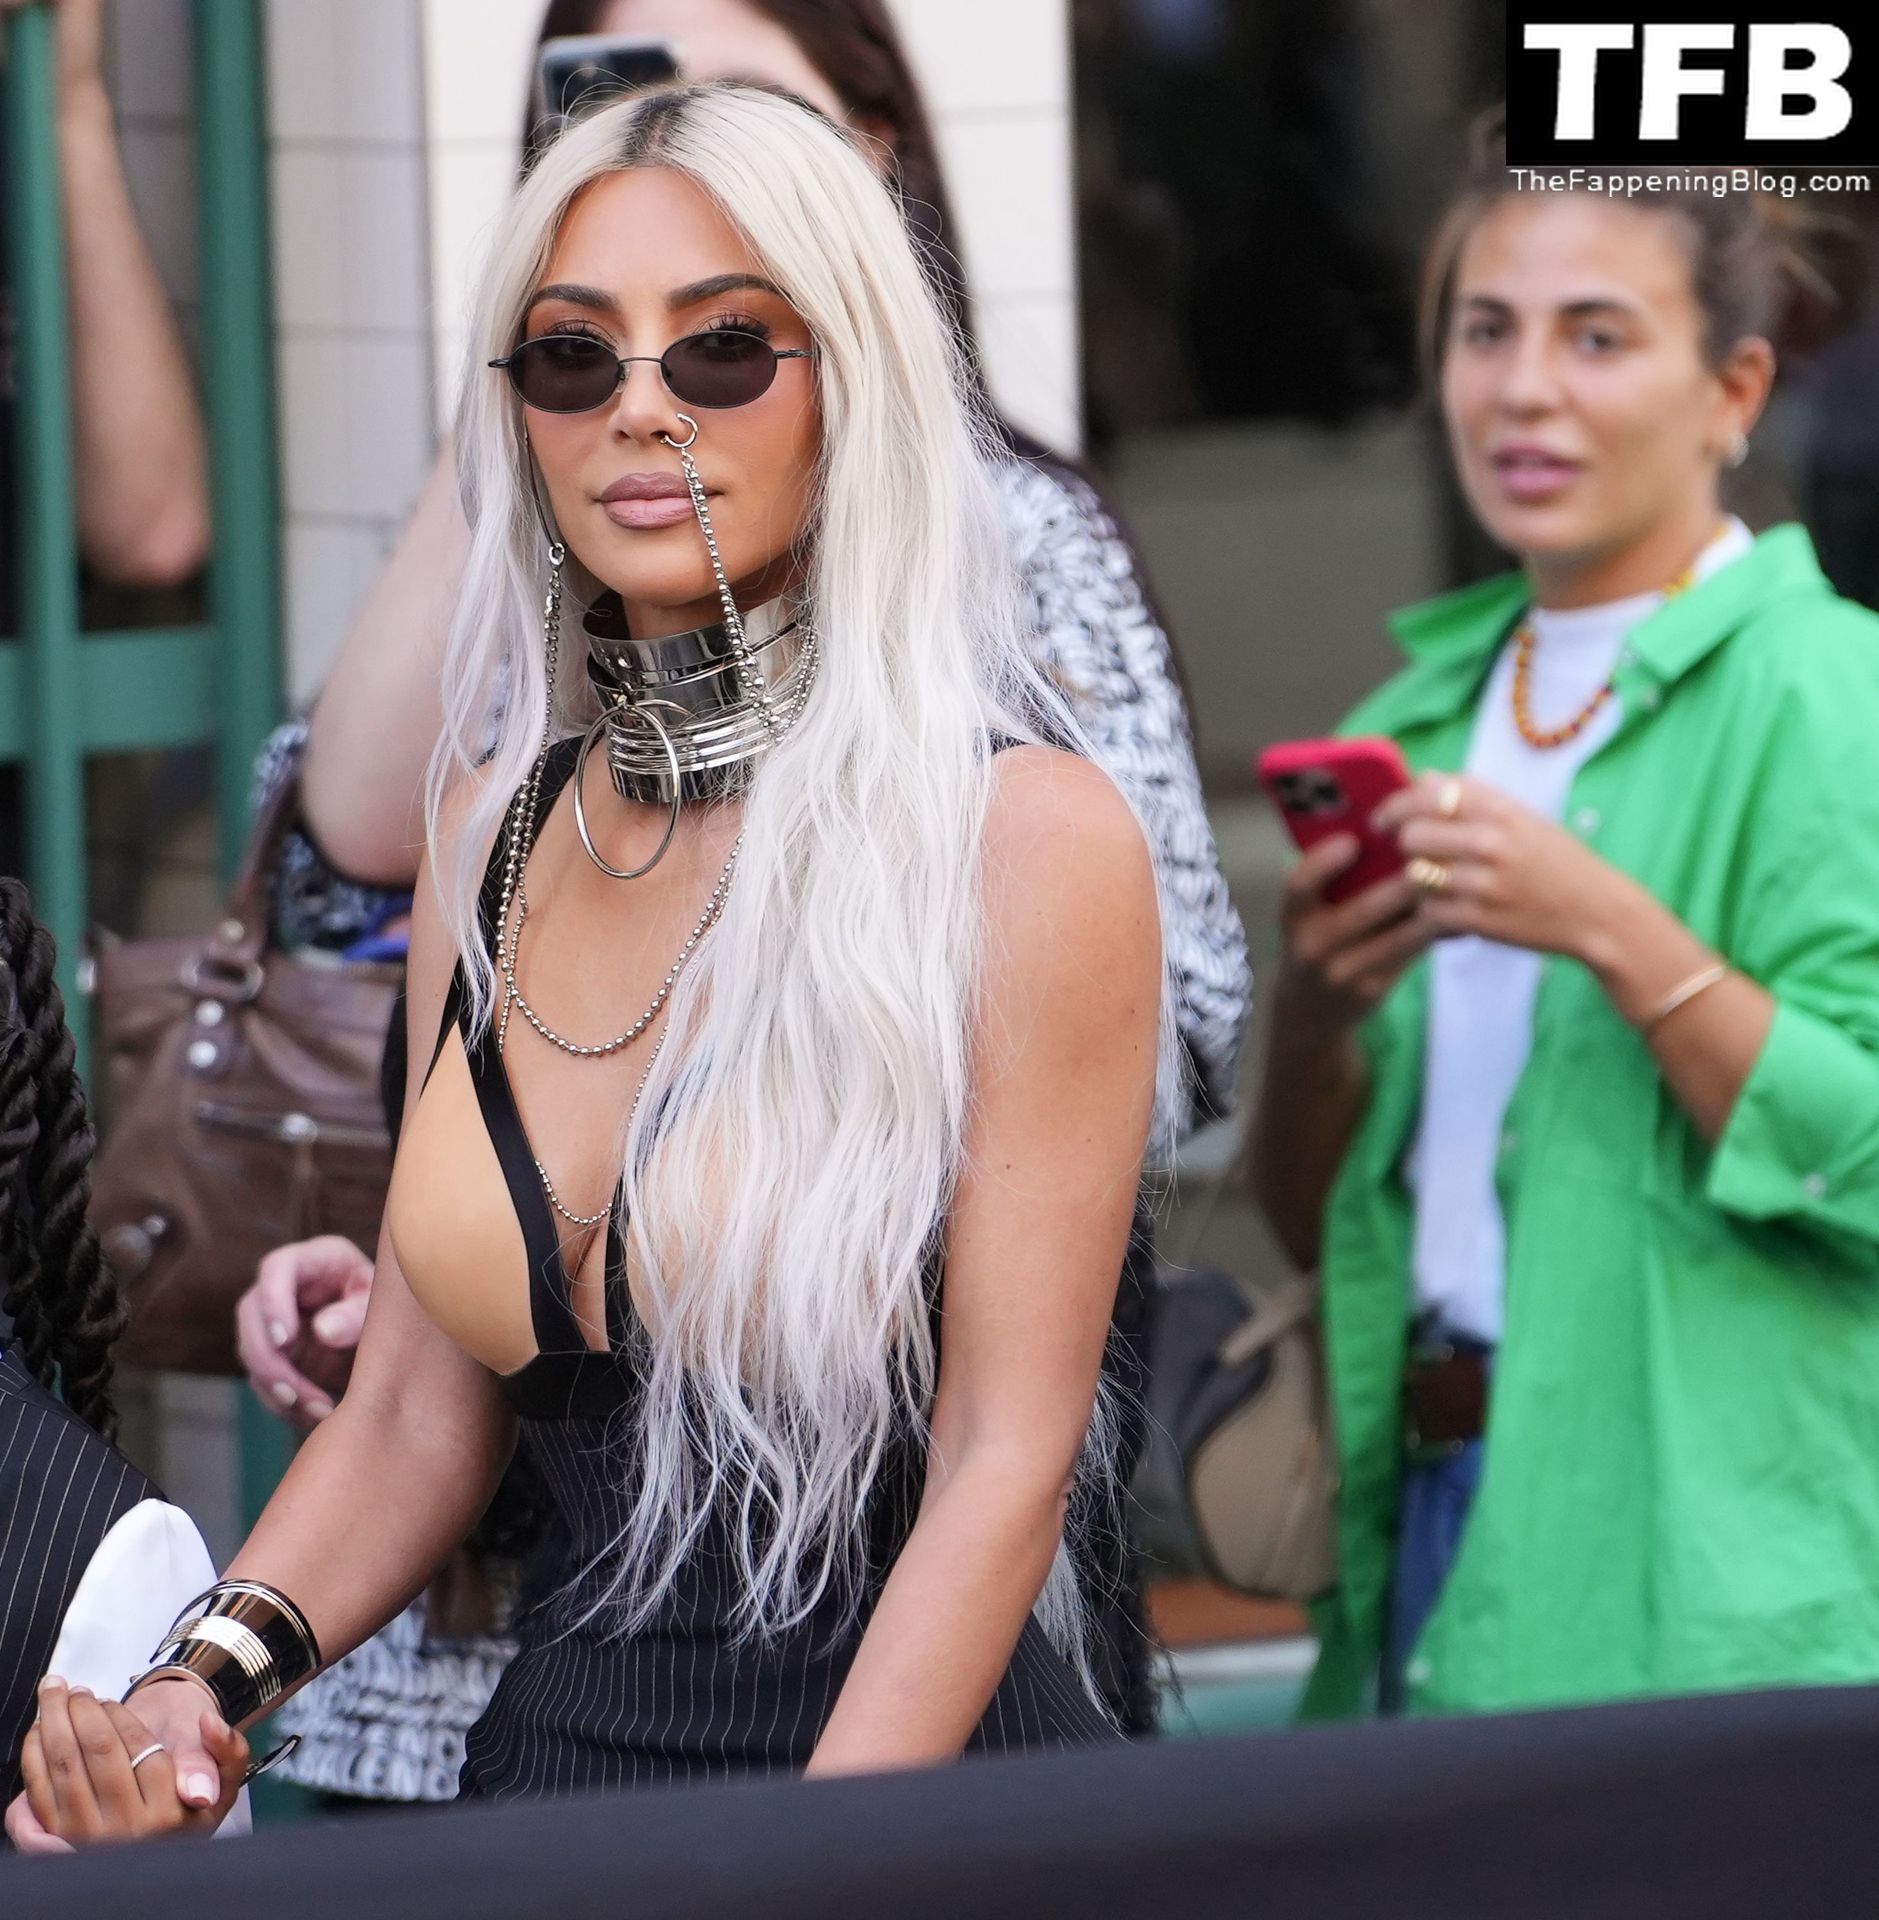 Kim-Kardashian-Sexy-The-Fappening-Blog-72.jpg